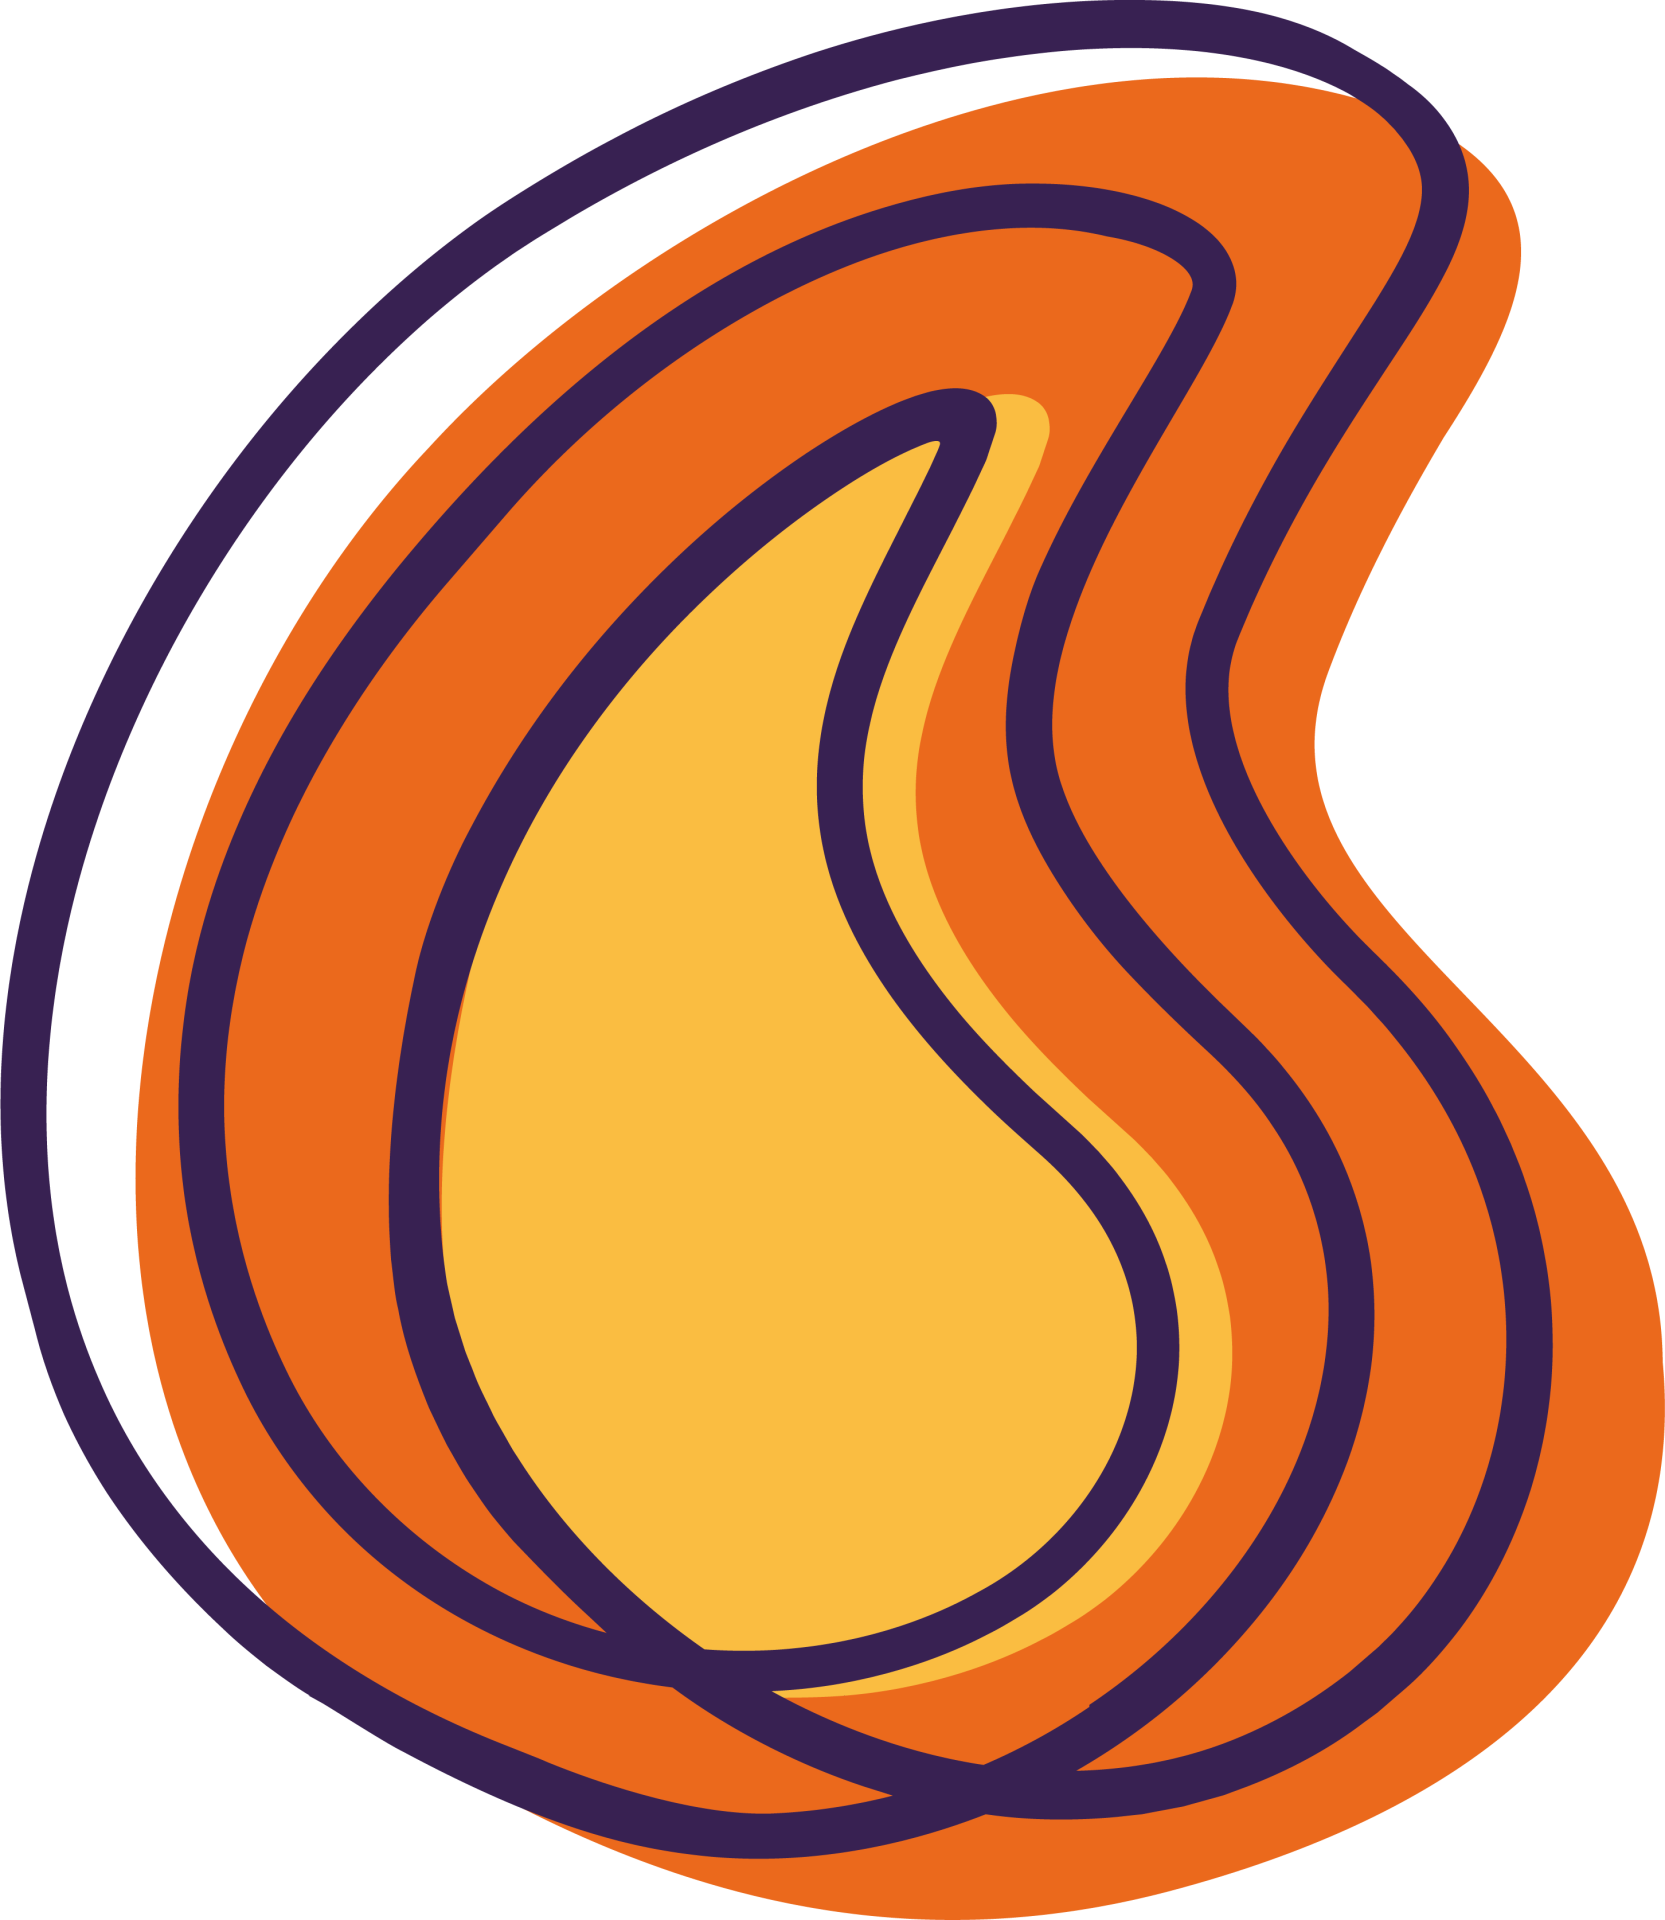 Beacon flame logo